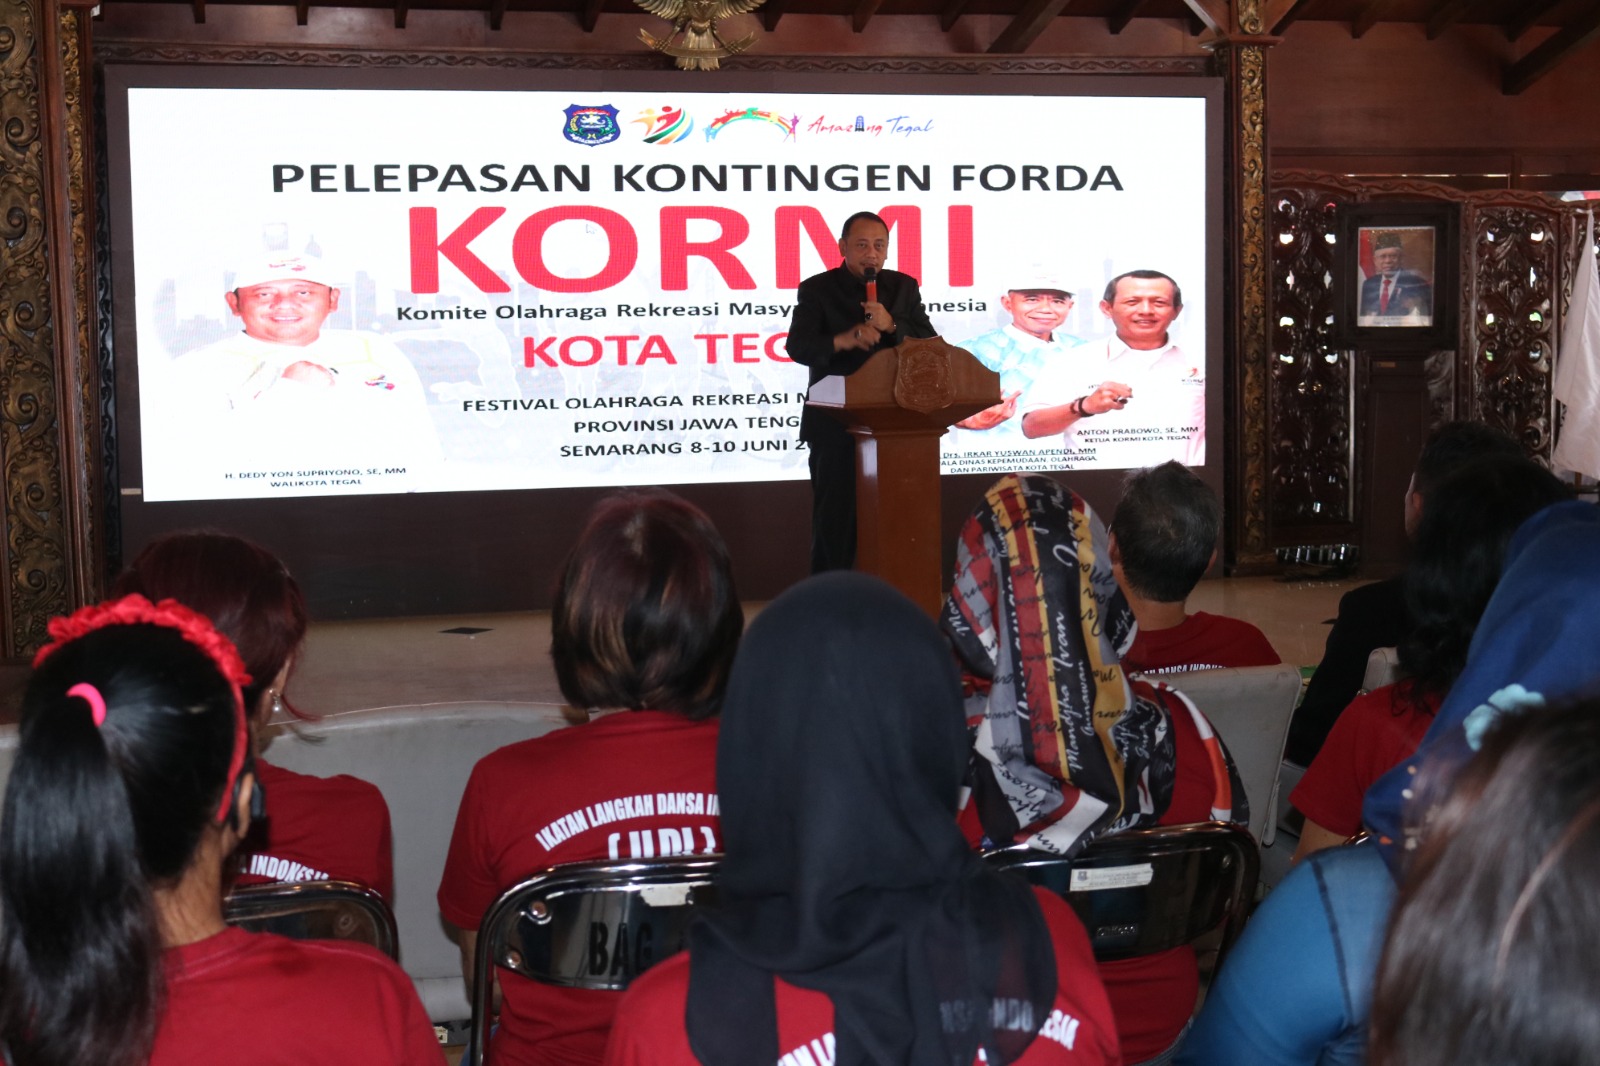 Wali Kota Tegal Lepas Kontingen KORMI ke FORDA Jawa Tengah